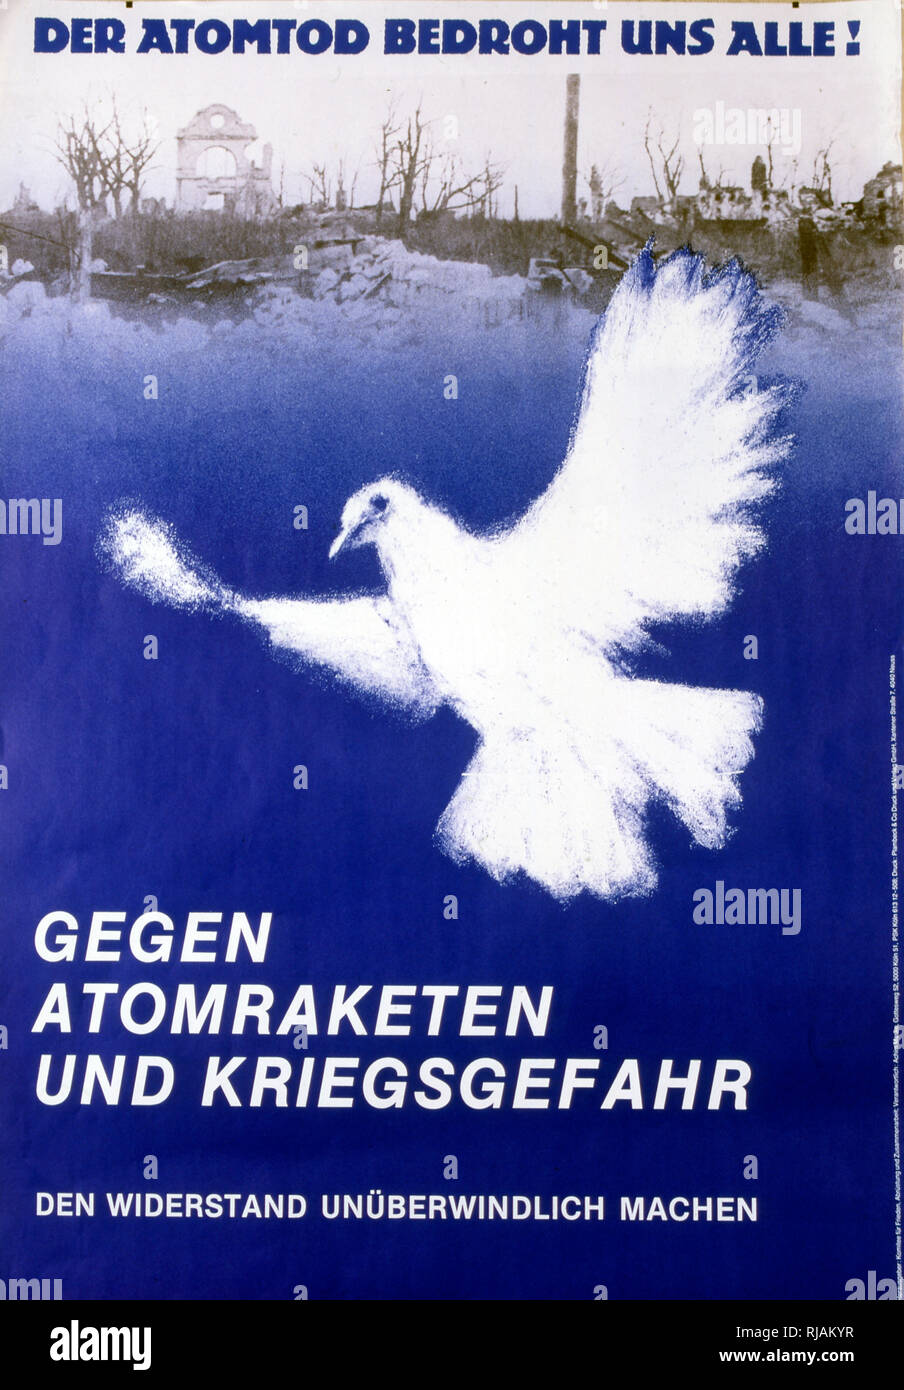 Unse bedroht atomtod der alle' 'la muerte atómica amenaza todos' de 1983, anti-guerra nuclear, póster publicado por el Comité Alemán para la libertad Foto de stock